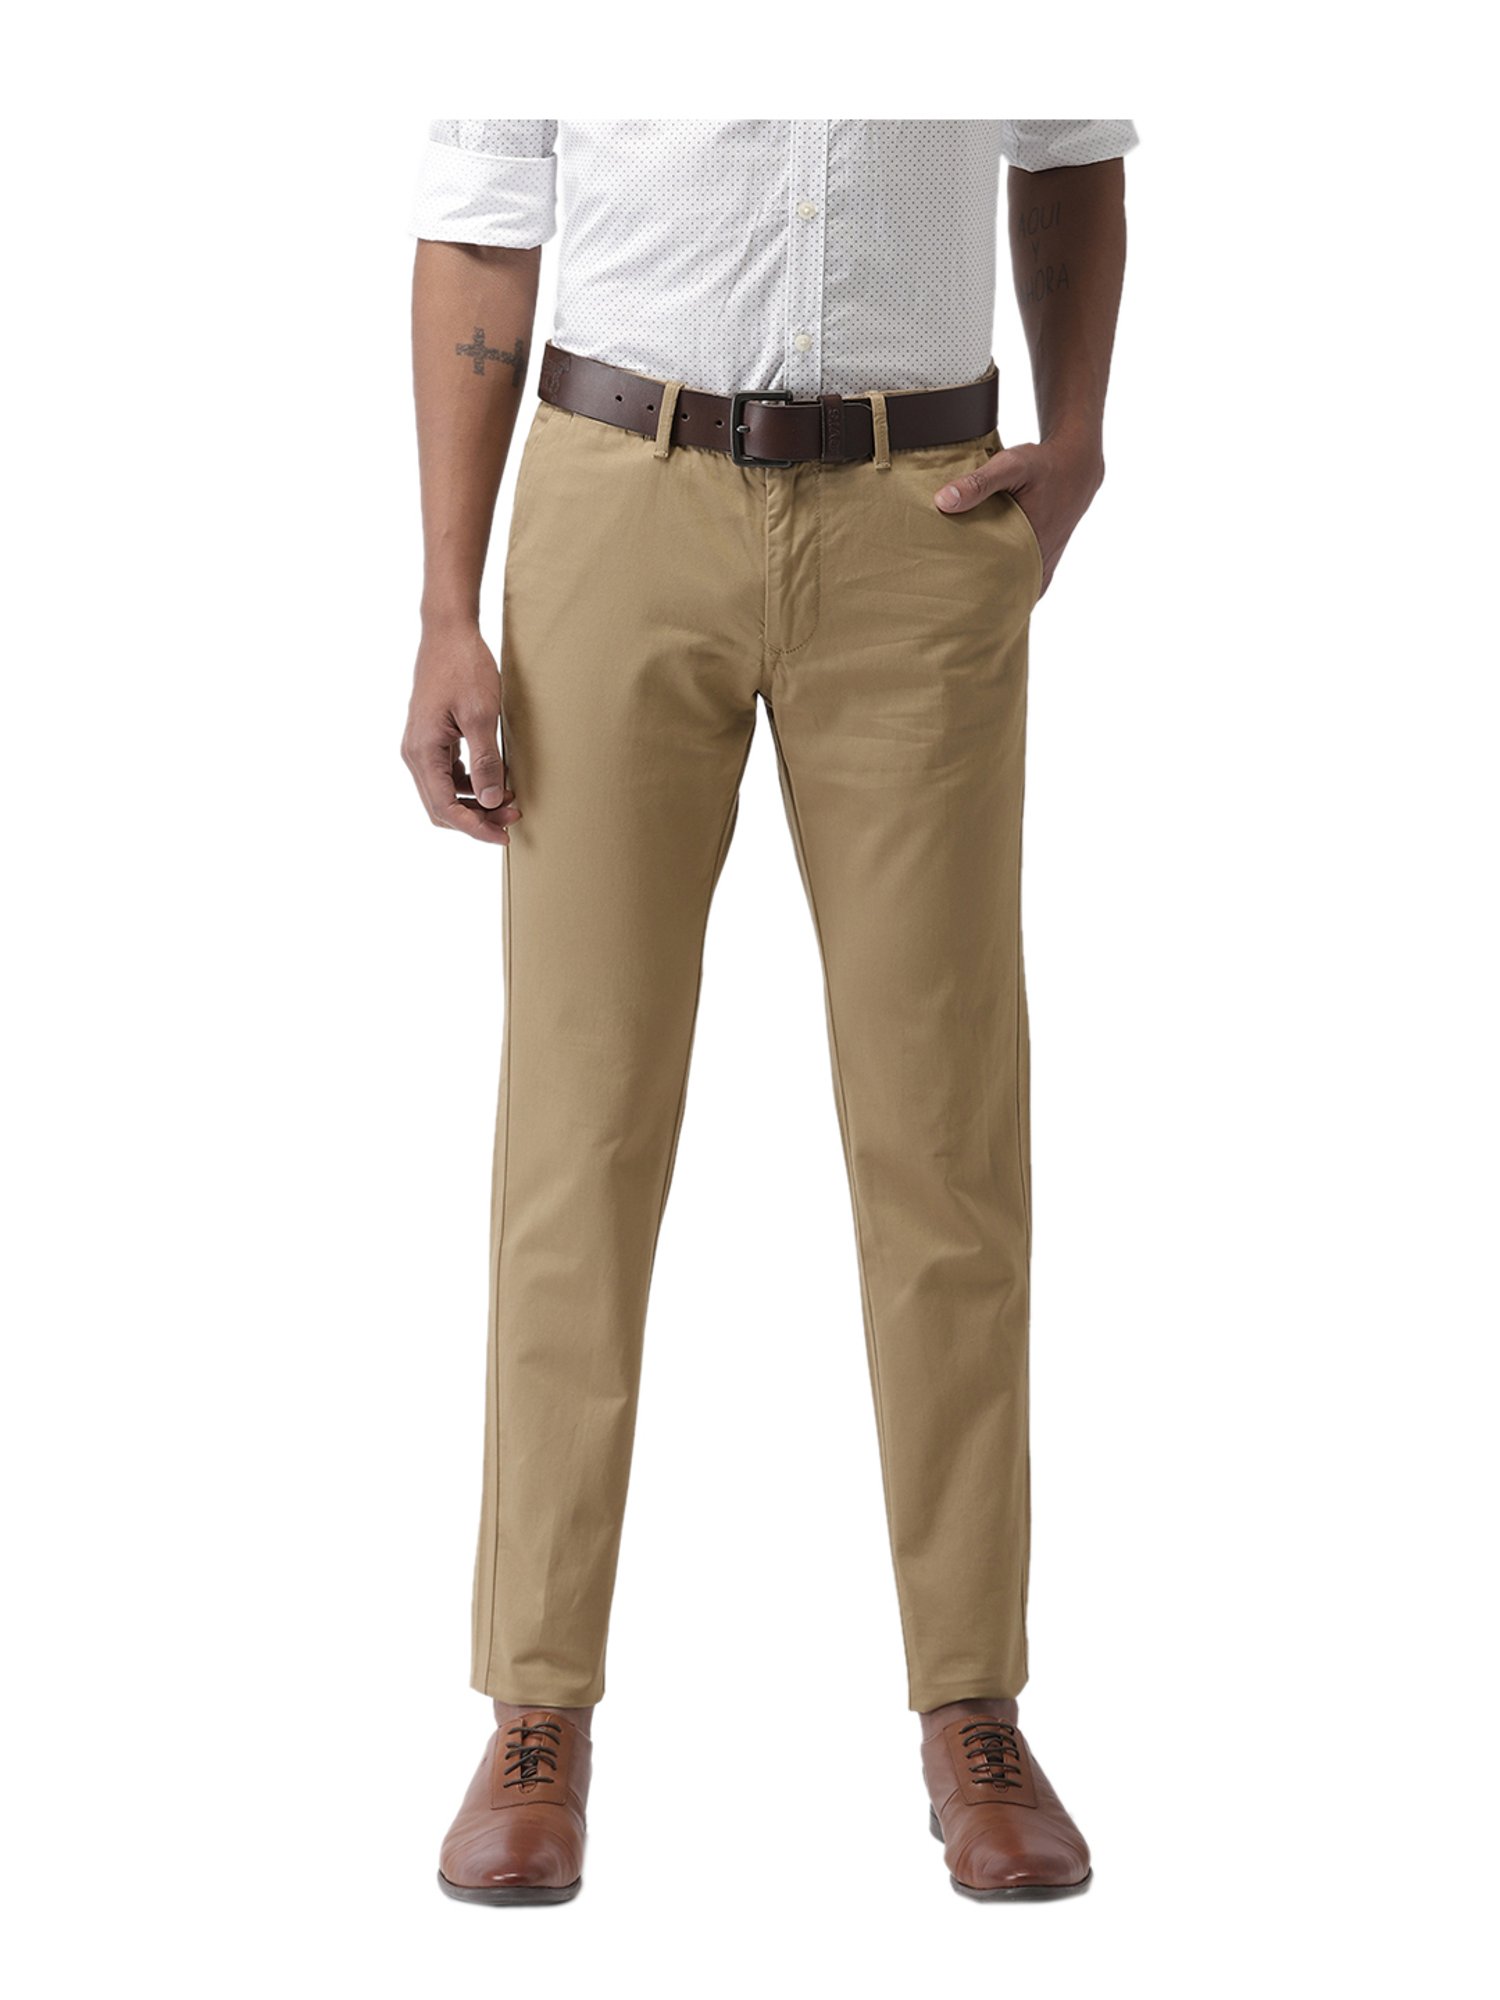 LEVIS Slim Fit Men Khaki Trousers  Buy LEVIS Slim Fit Men Khaki Trousers  Online at Best Prices in India  Flipkartcom  VIBRANT CONTEST